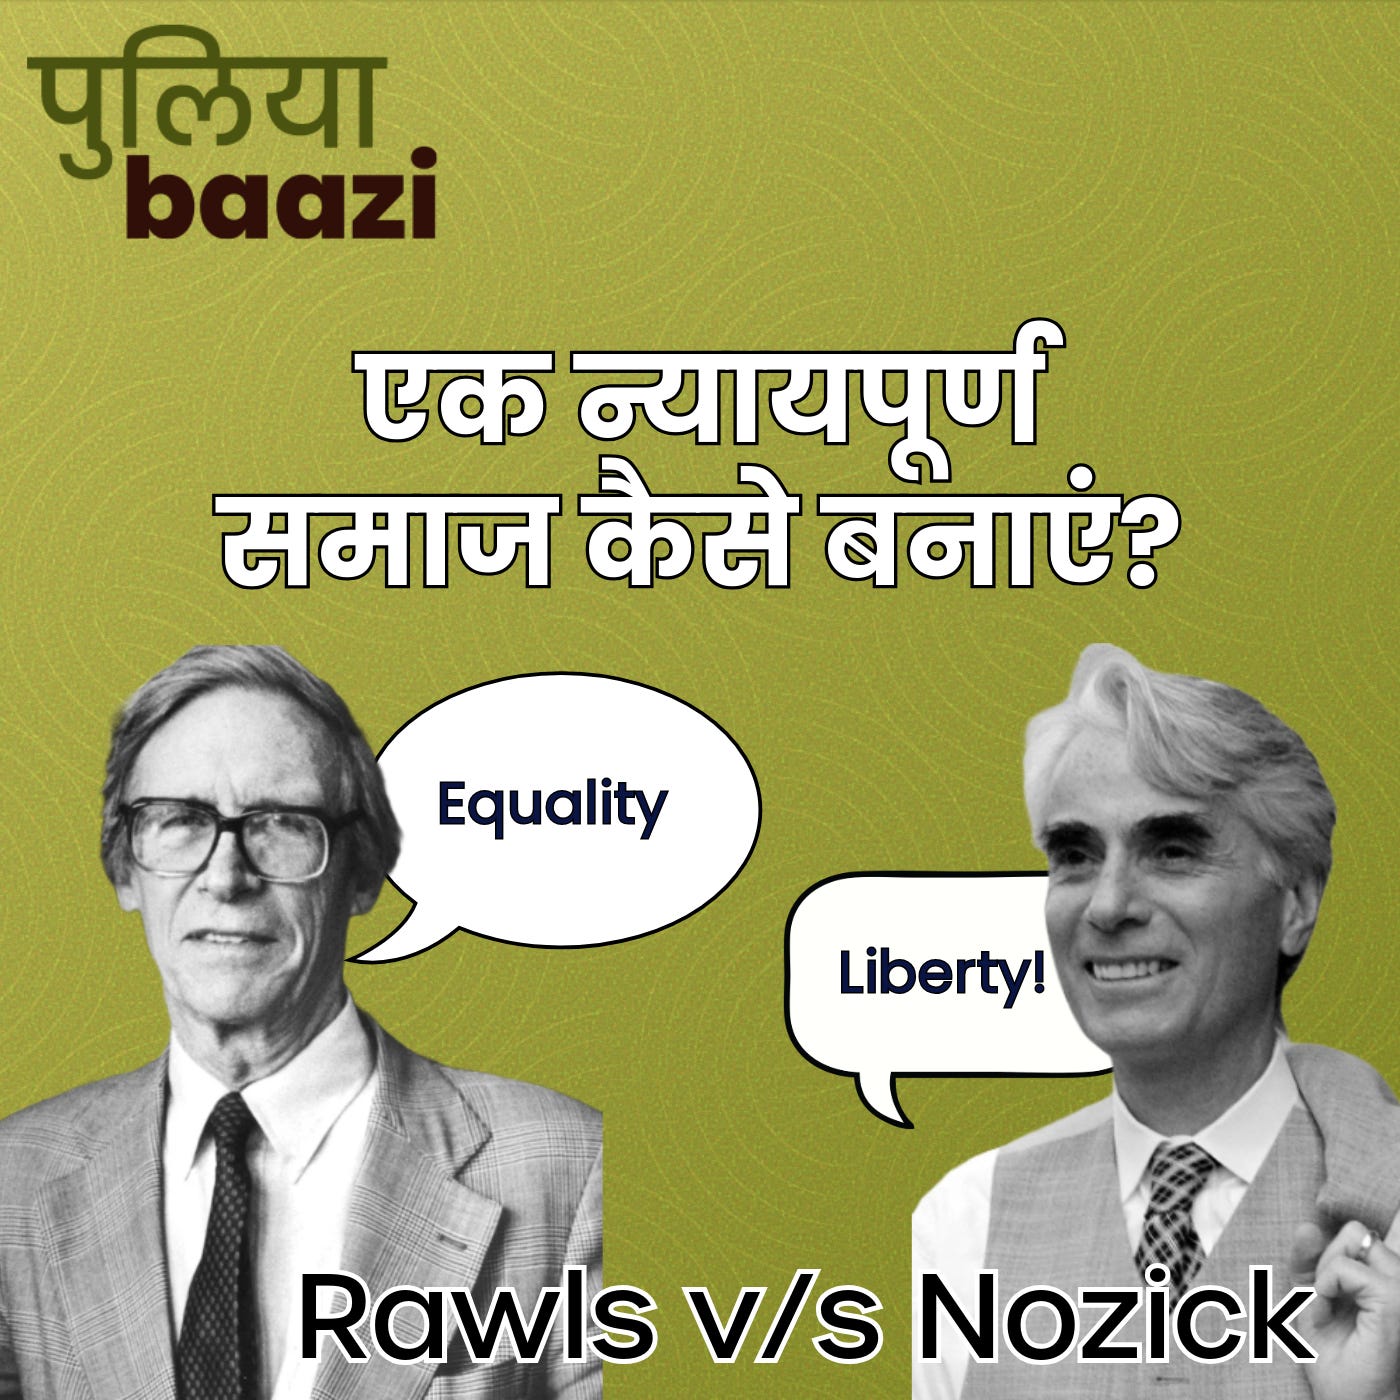 एक न्यायपूर्ण समाज कैसे बनाएं? Rawls v/s Nozick Debate